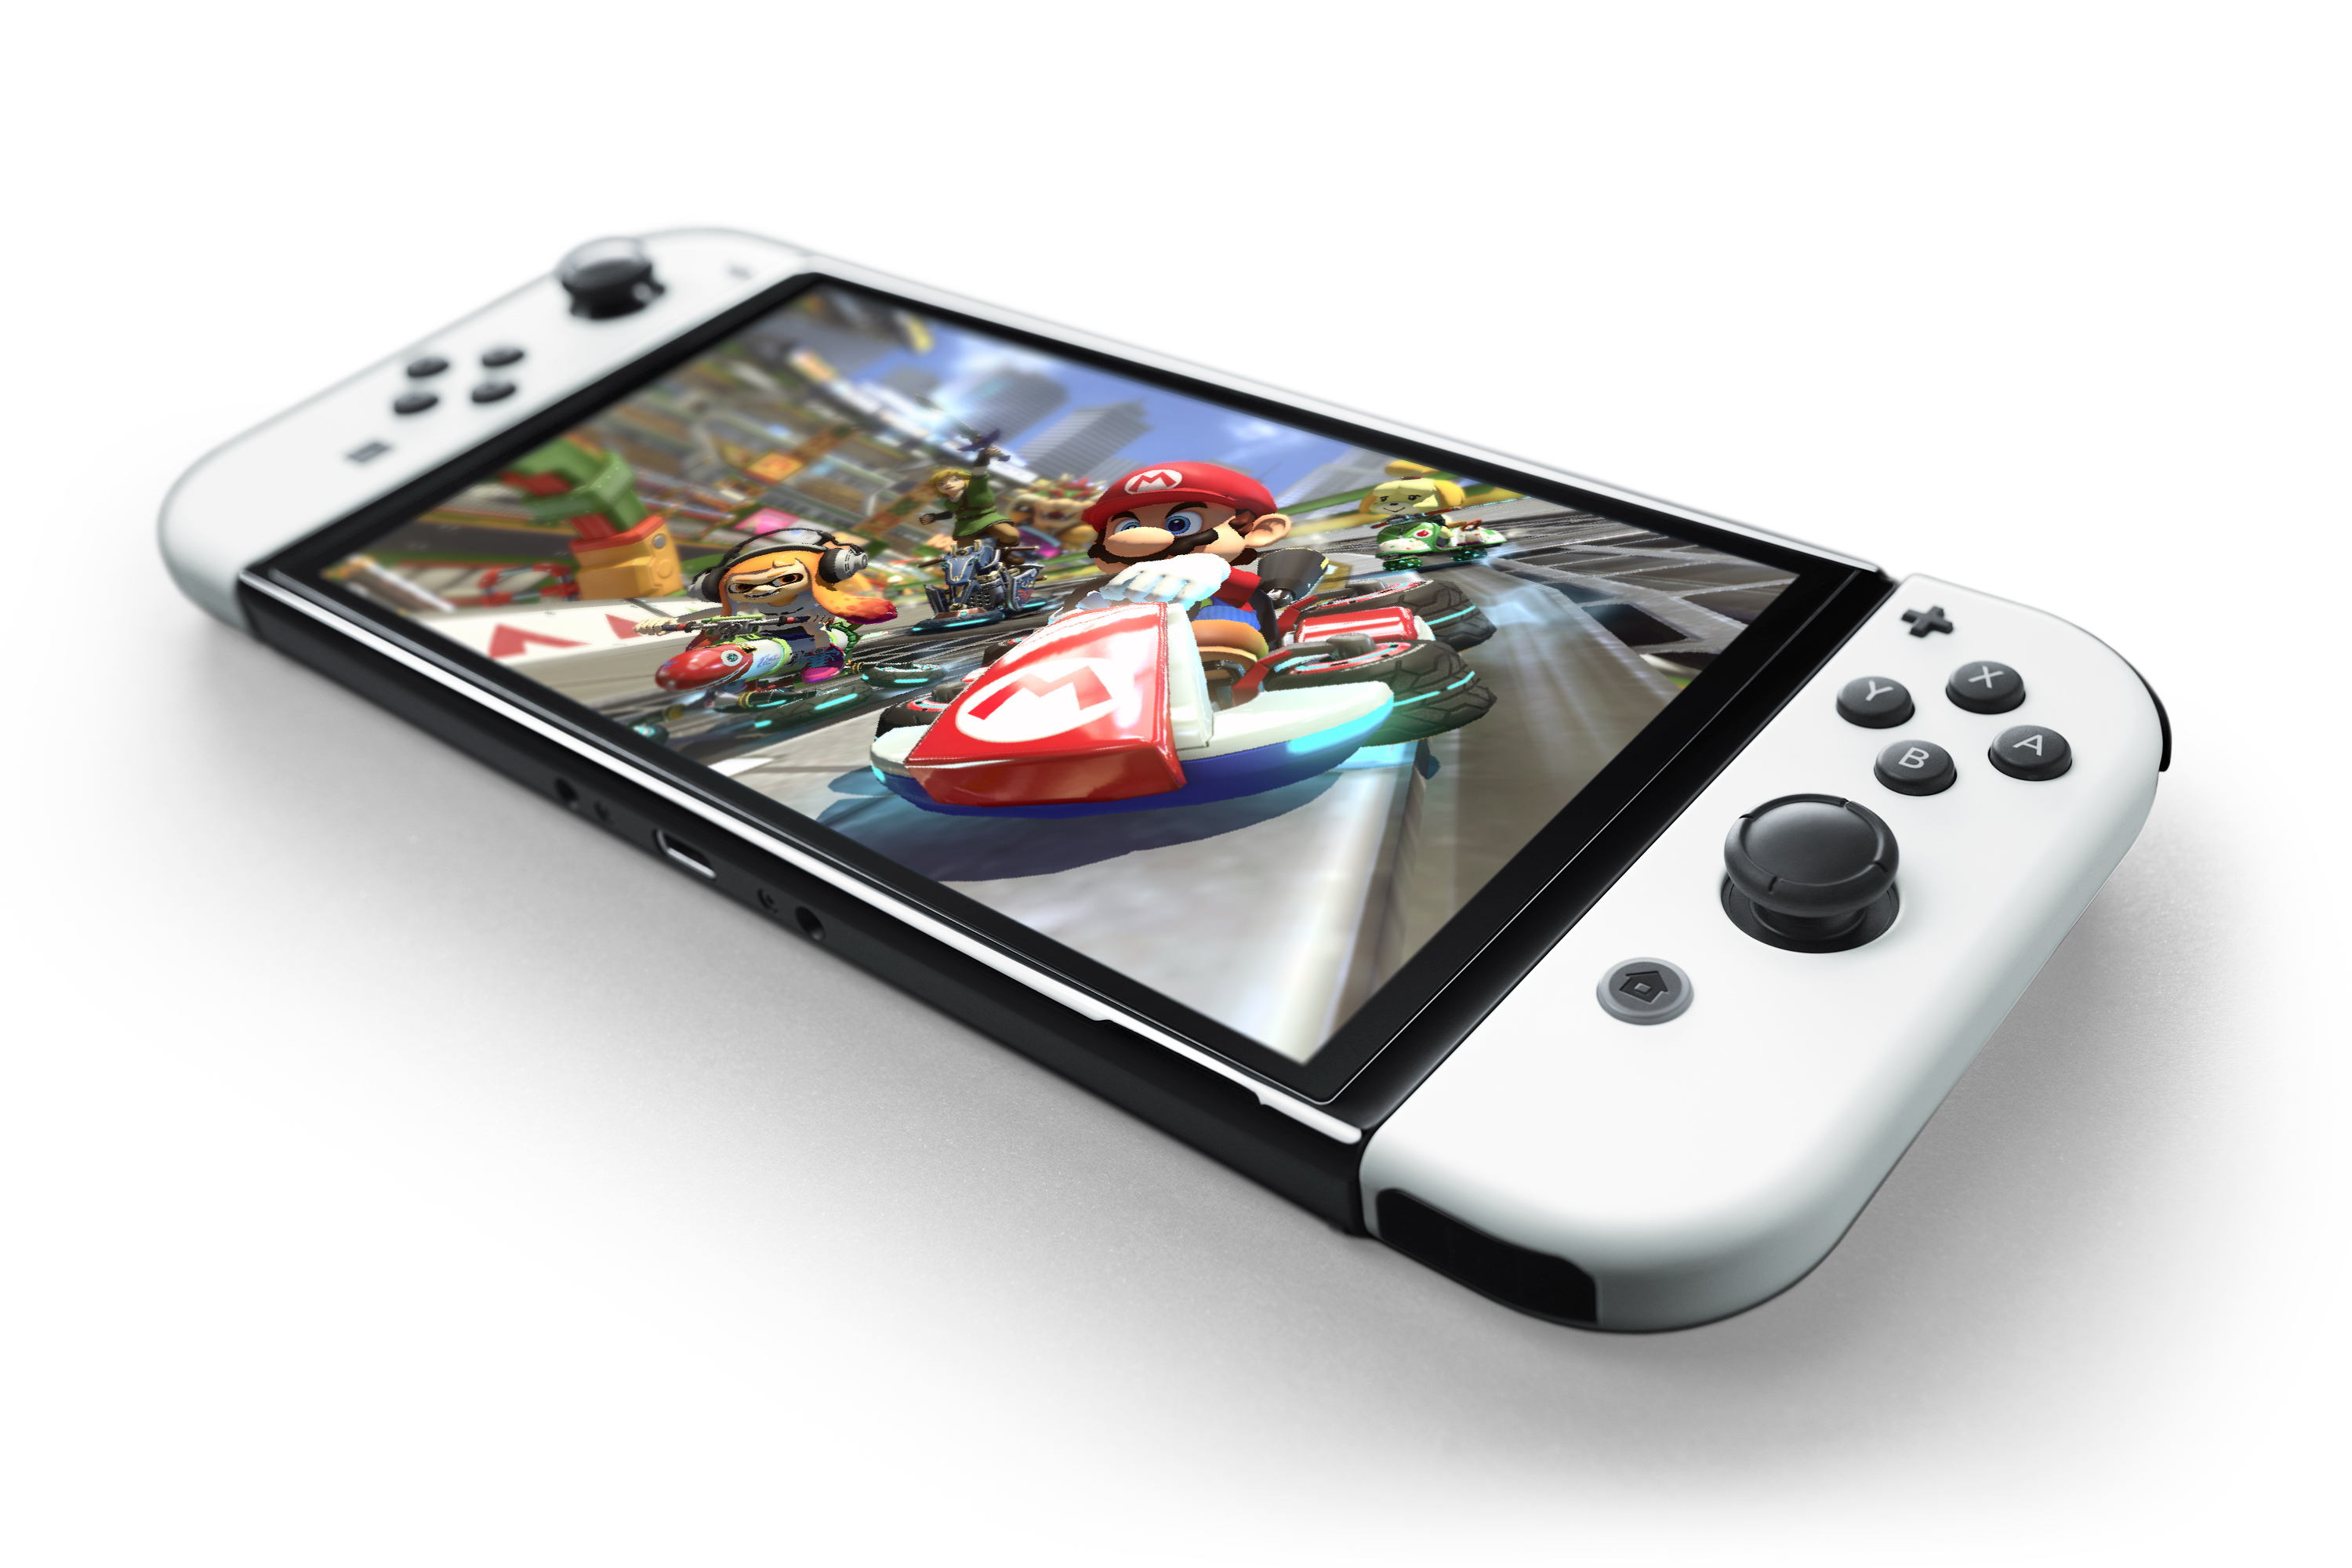 腾讯引进Nintendo Switch (OLED版)开启预售 多重满足您的娱乐需求